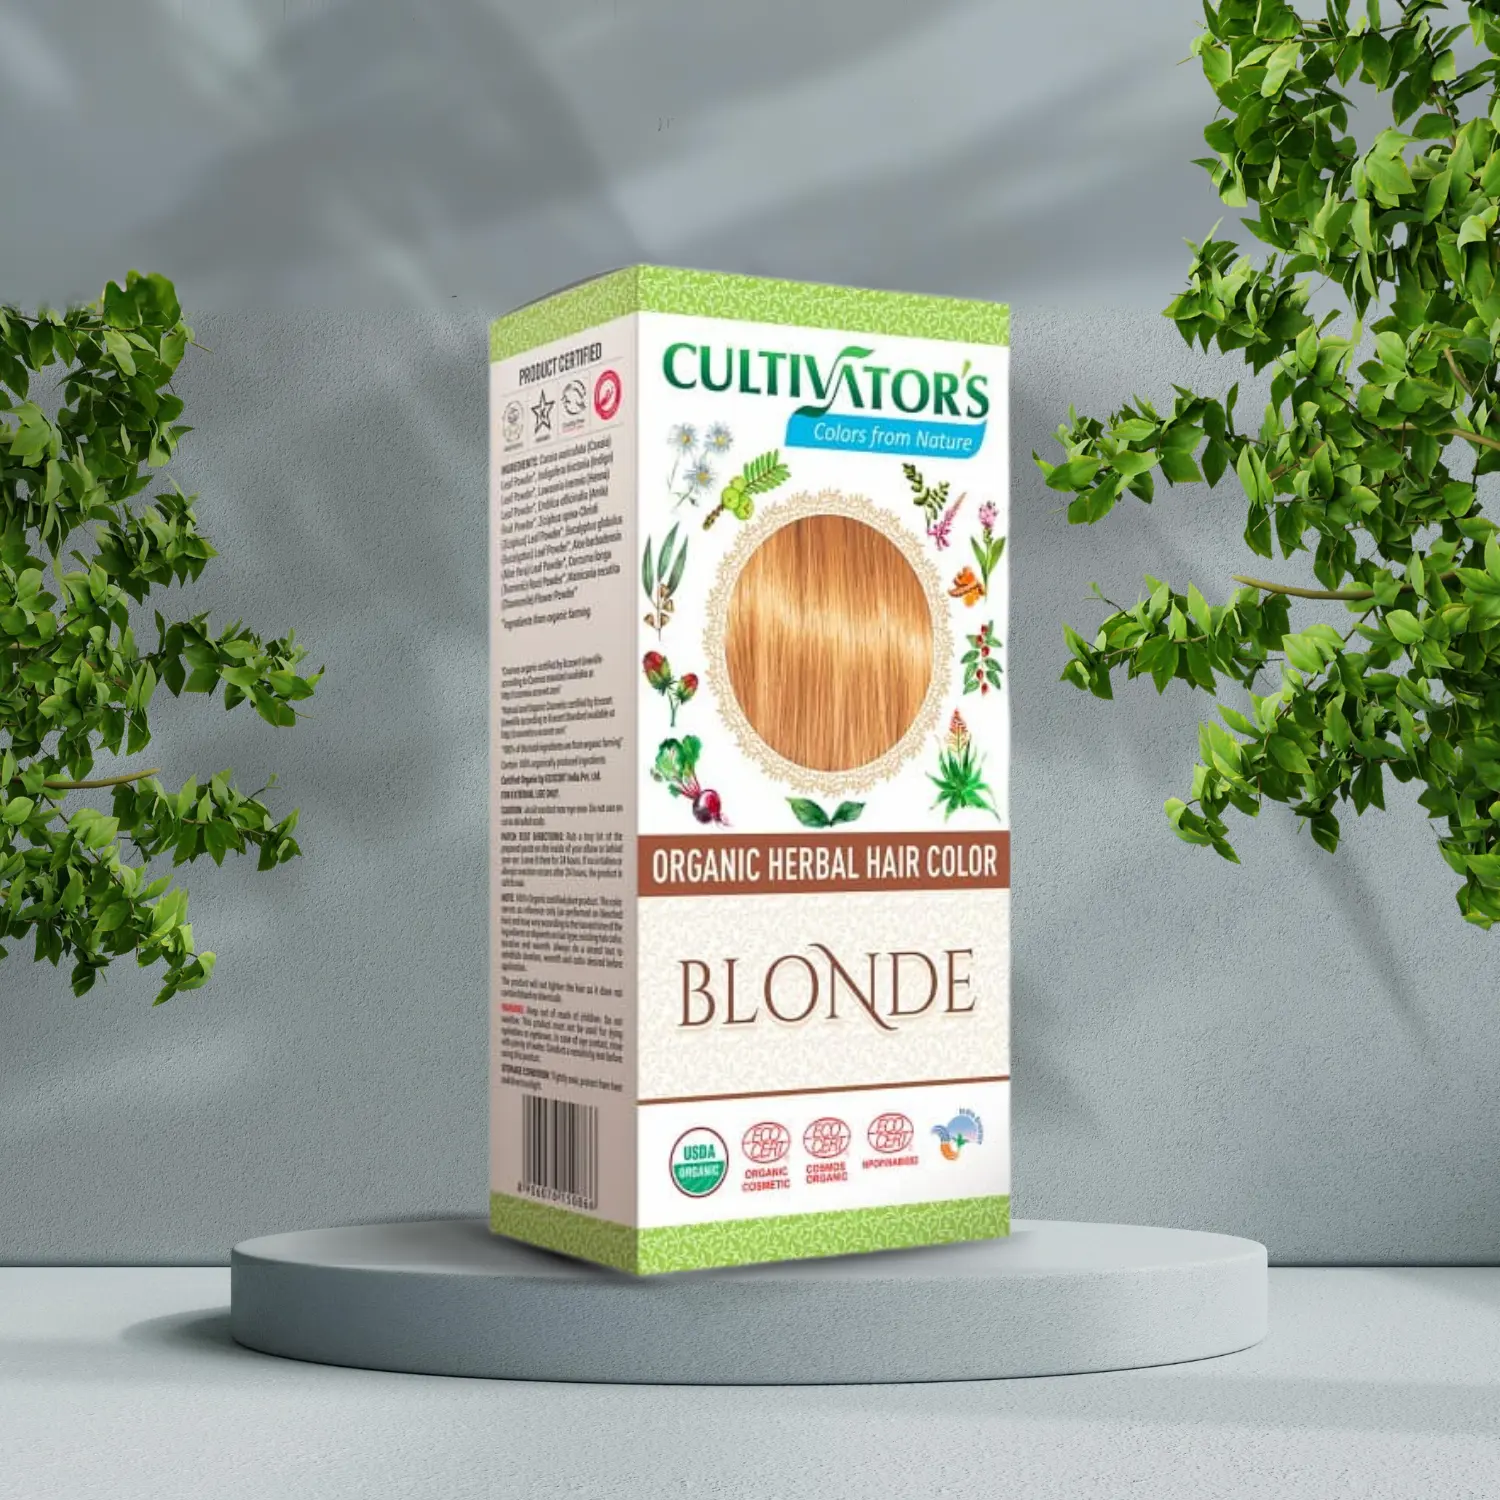 Æsken med Cultivators Henna hårfarve Blonde 100g står på et bord ved siden af et træ og spreder en følelse af velvære og sundhed.